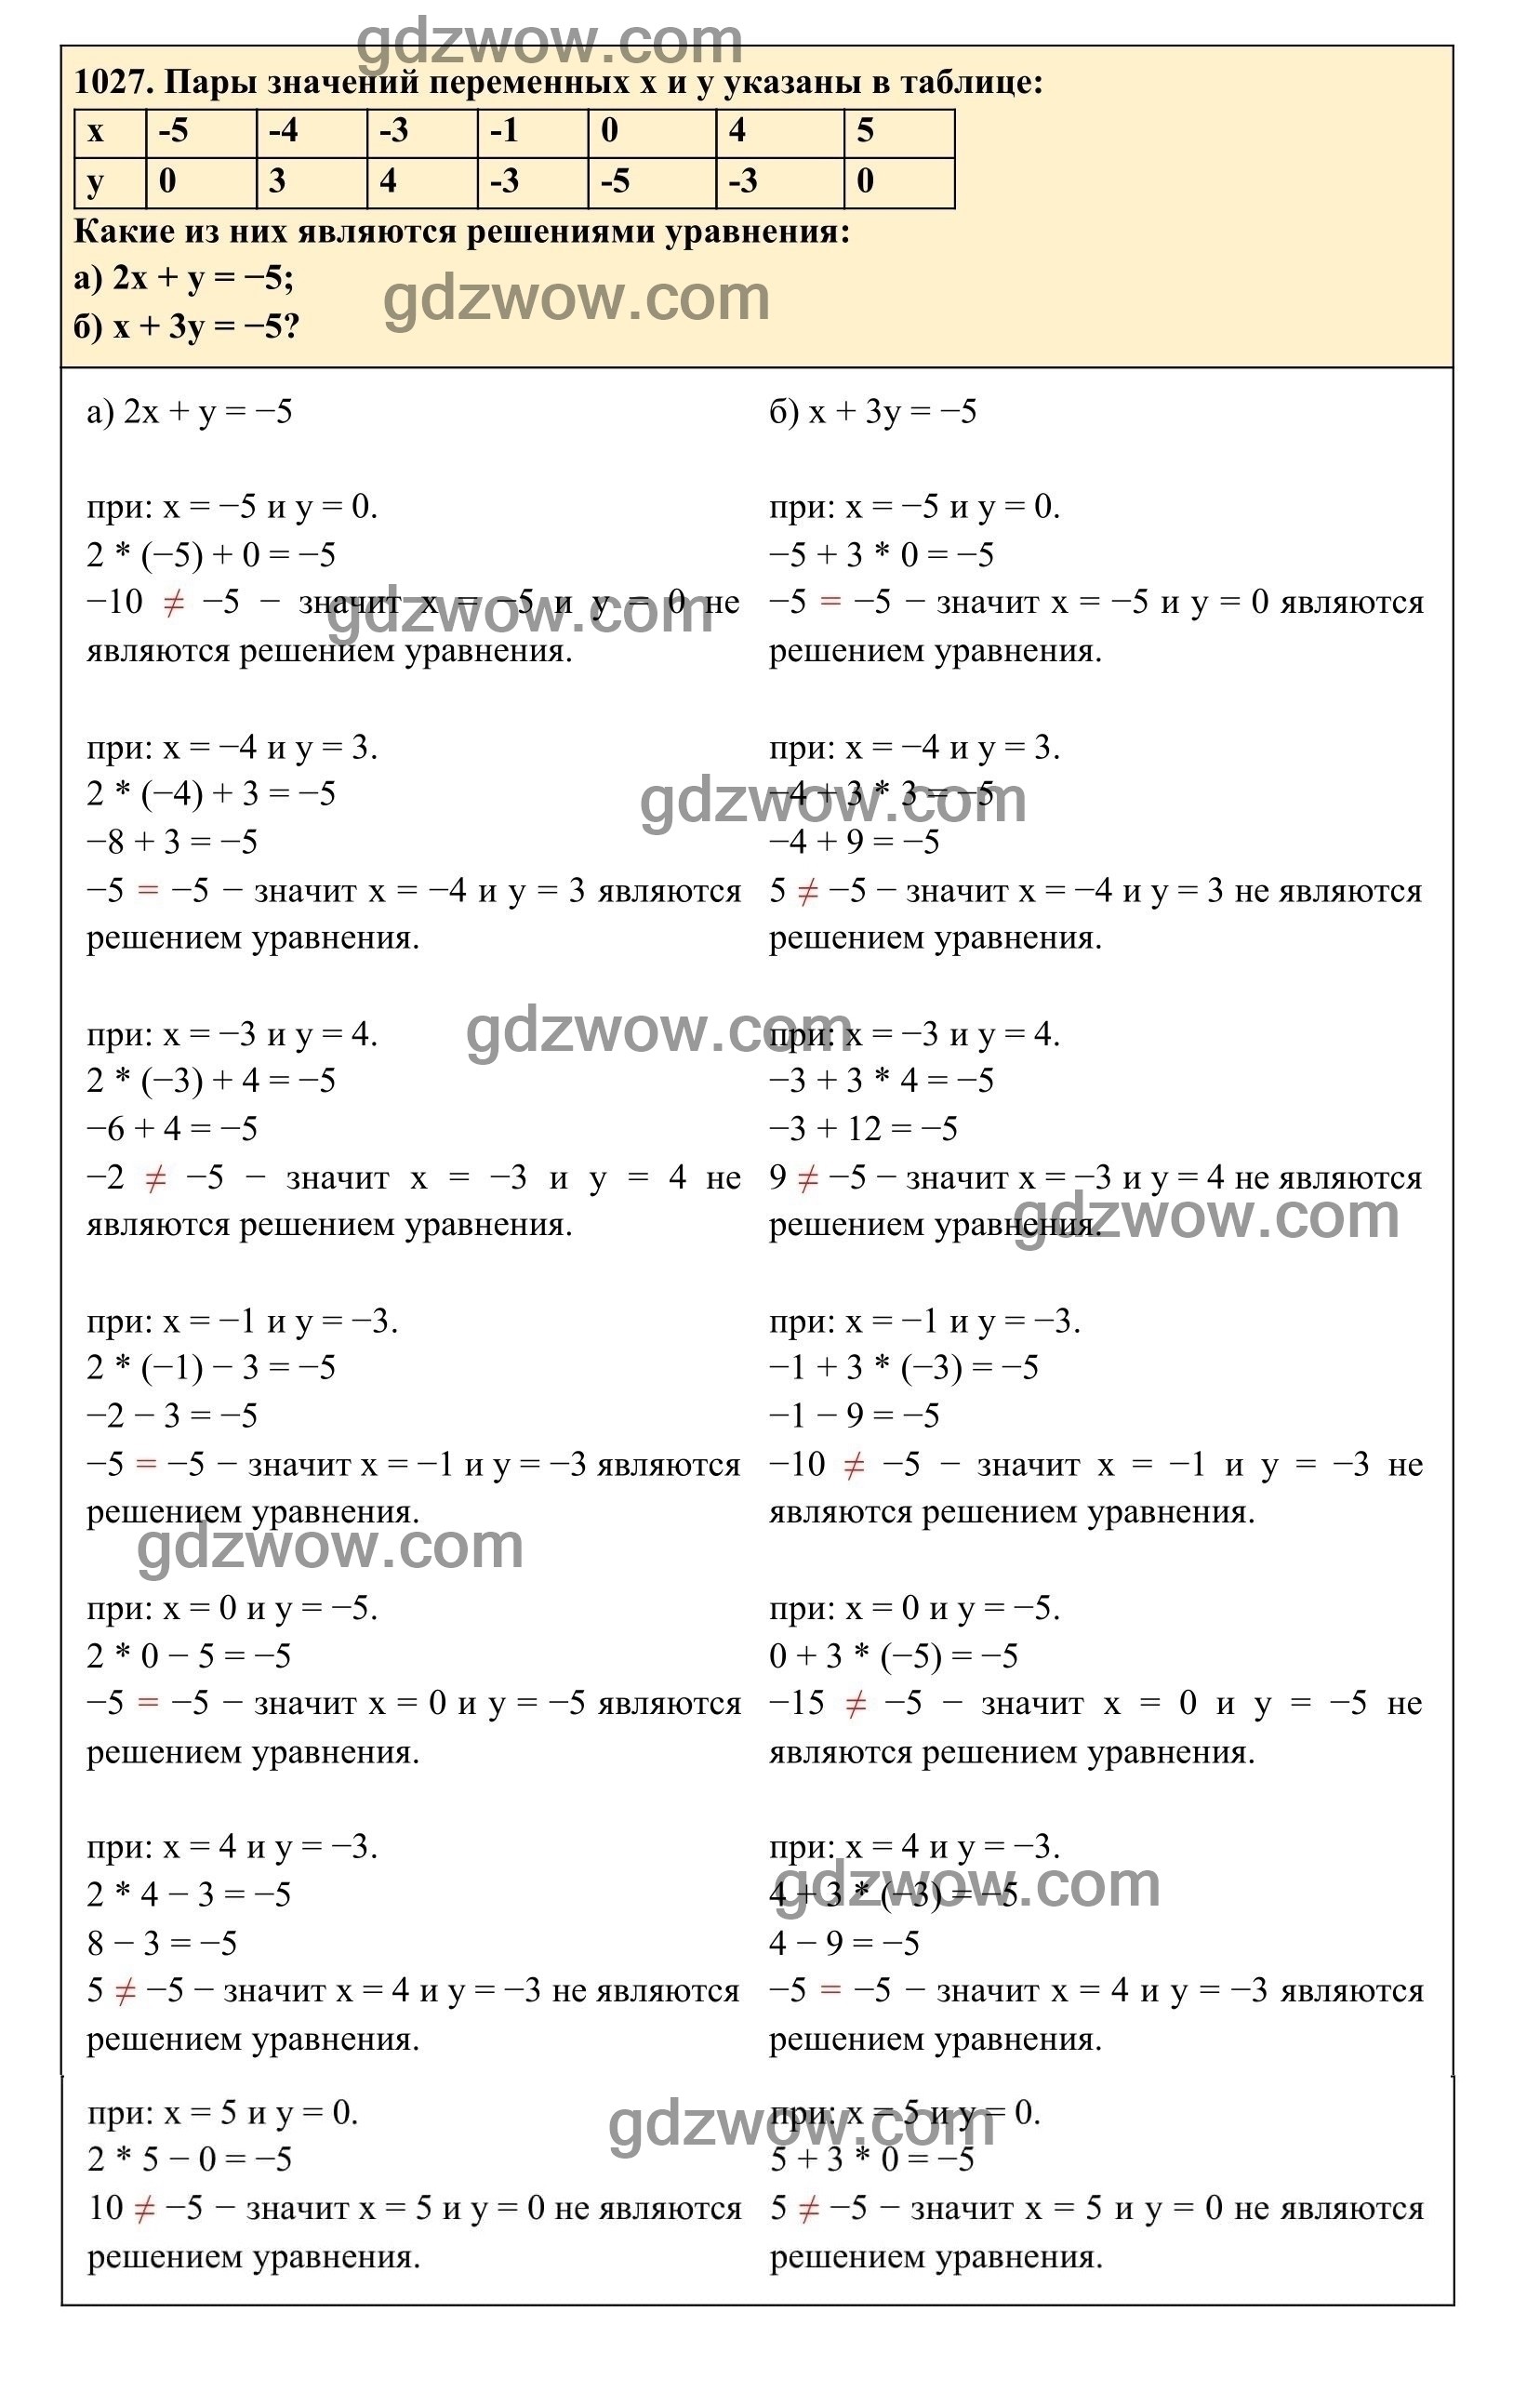 Упражнение 1027 - ГДЗ по Алгебре 7 класс Учебник Макарычев (решебник) - GDZwow